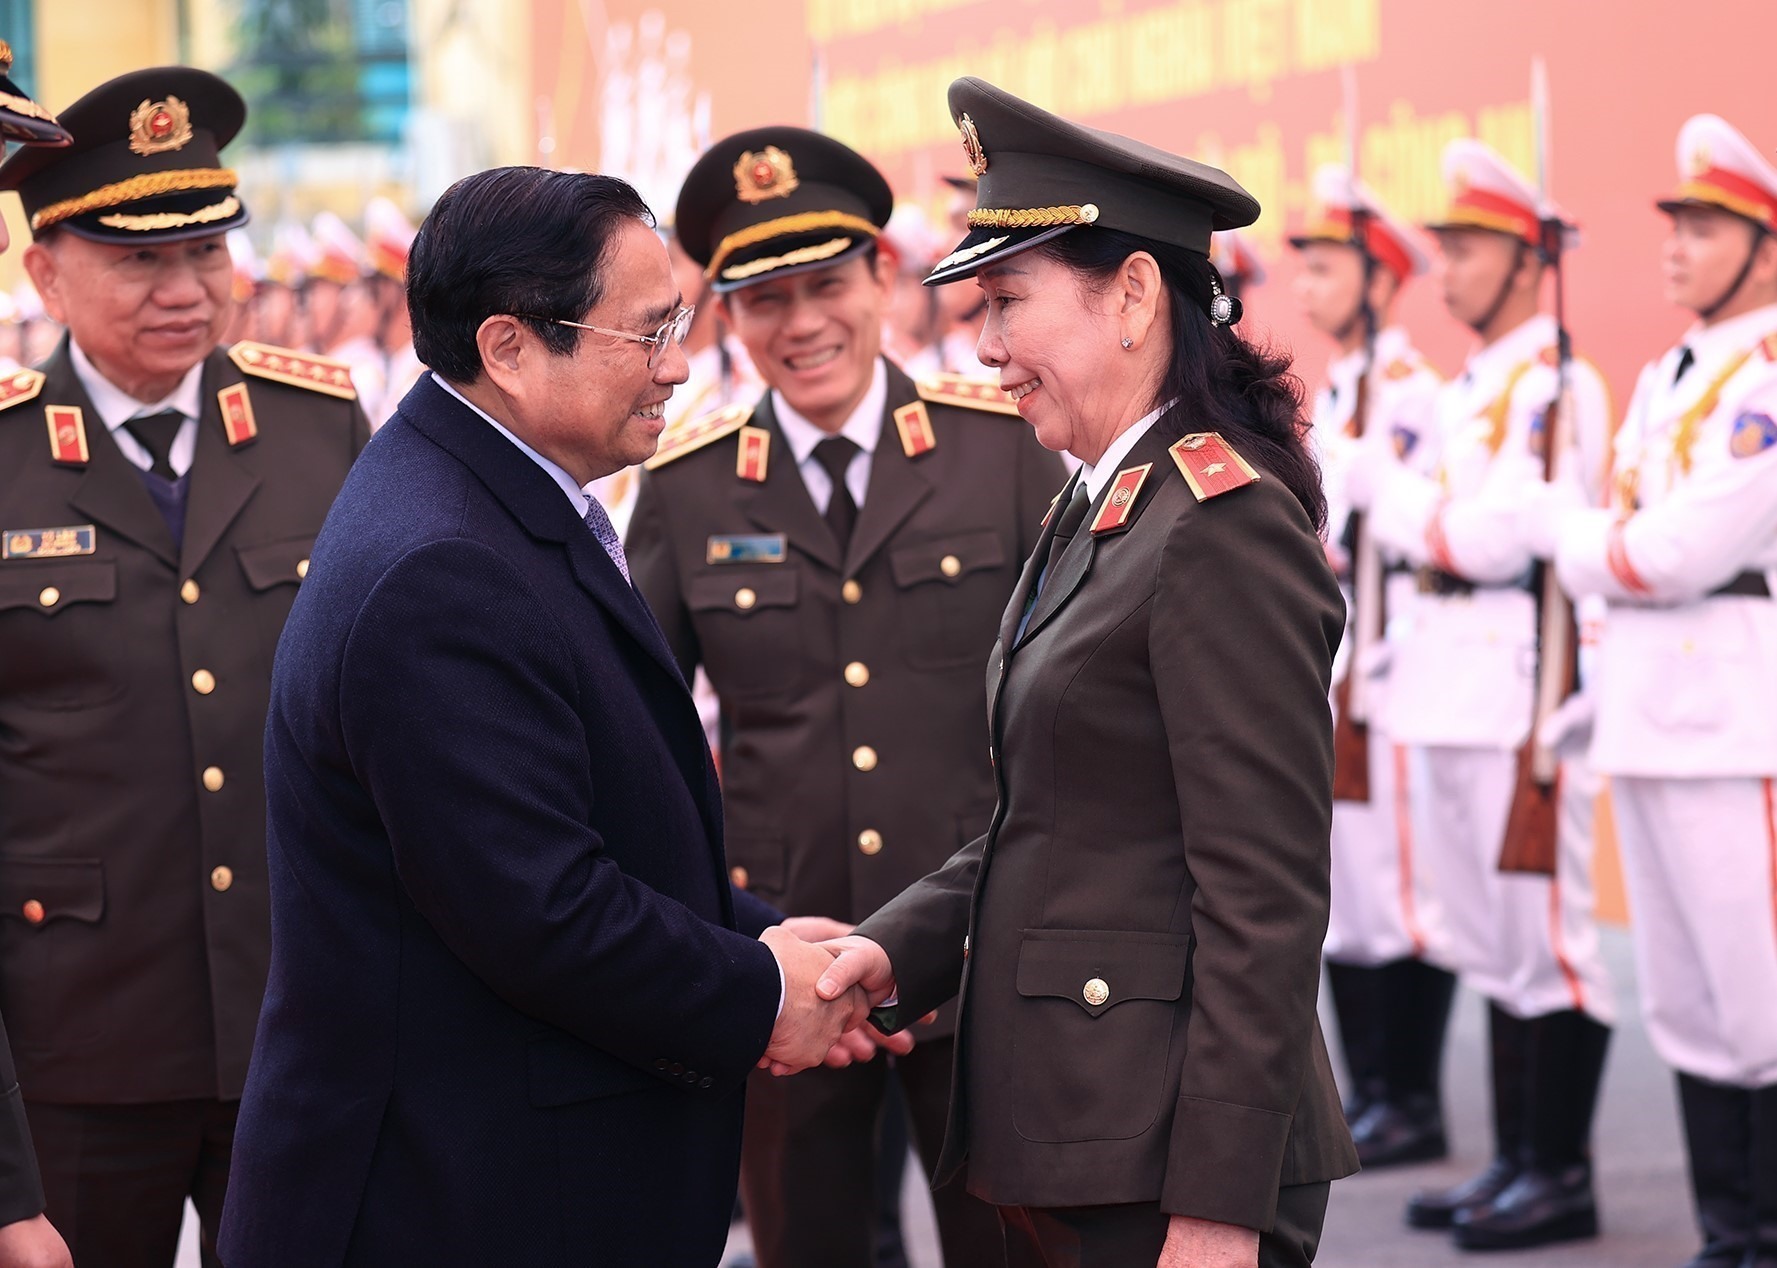 Thủ tướng Phạm Minh Chính đến thăm, chúc Tết cán bộ, chiến sĩ Cục An ninh Chính trị nội bộ - Bộ Công an. Ảnh: Dương Giang